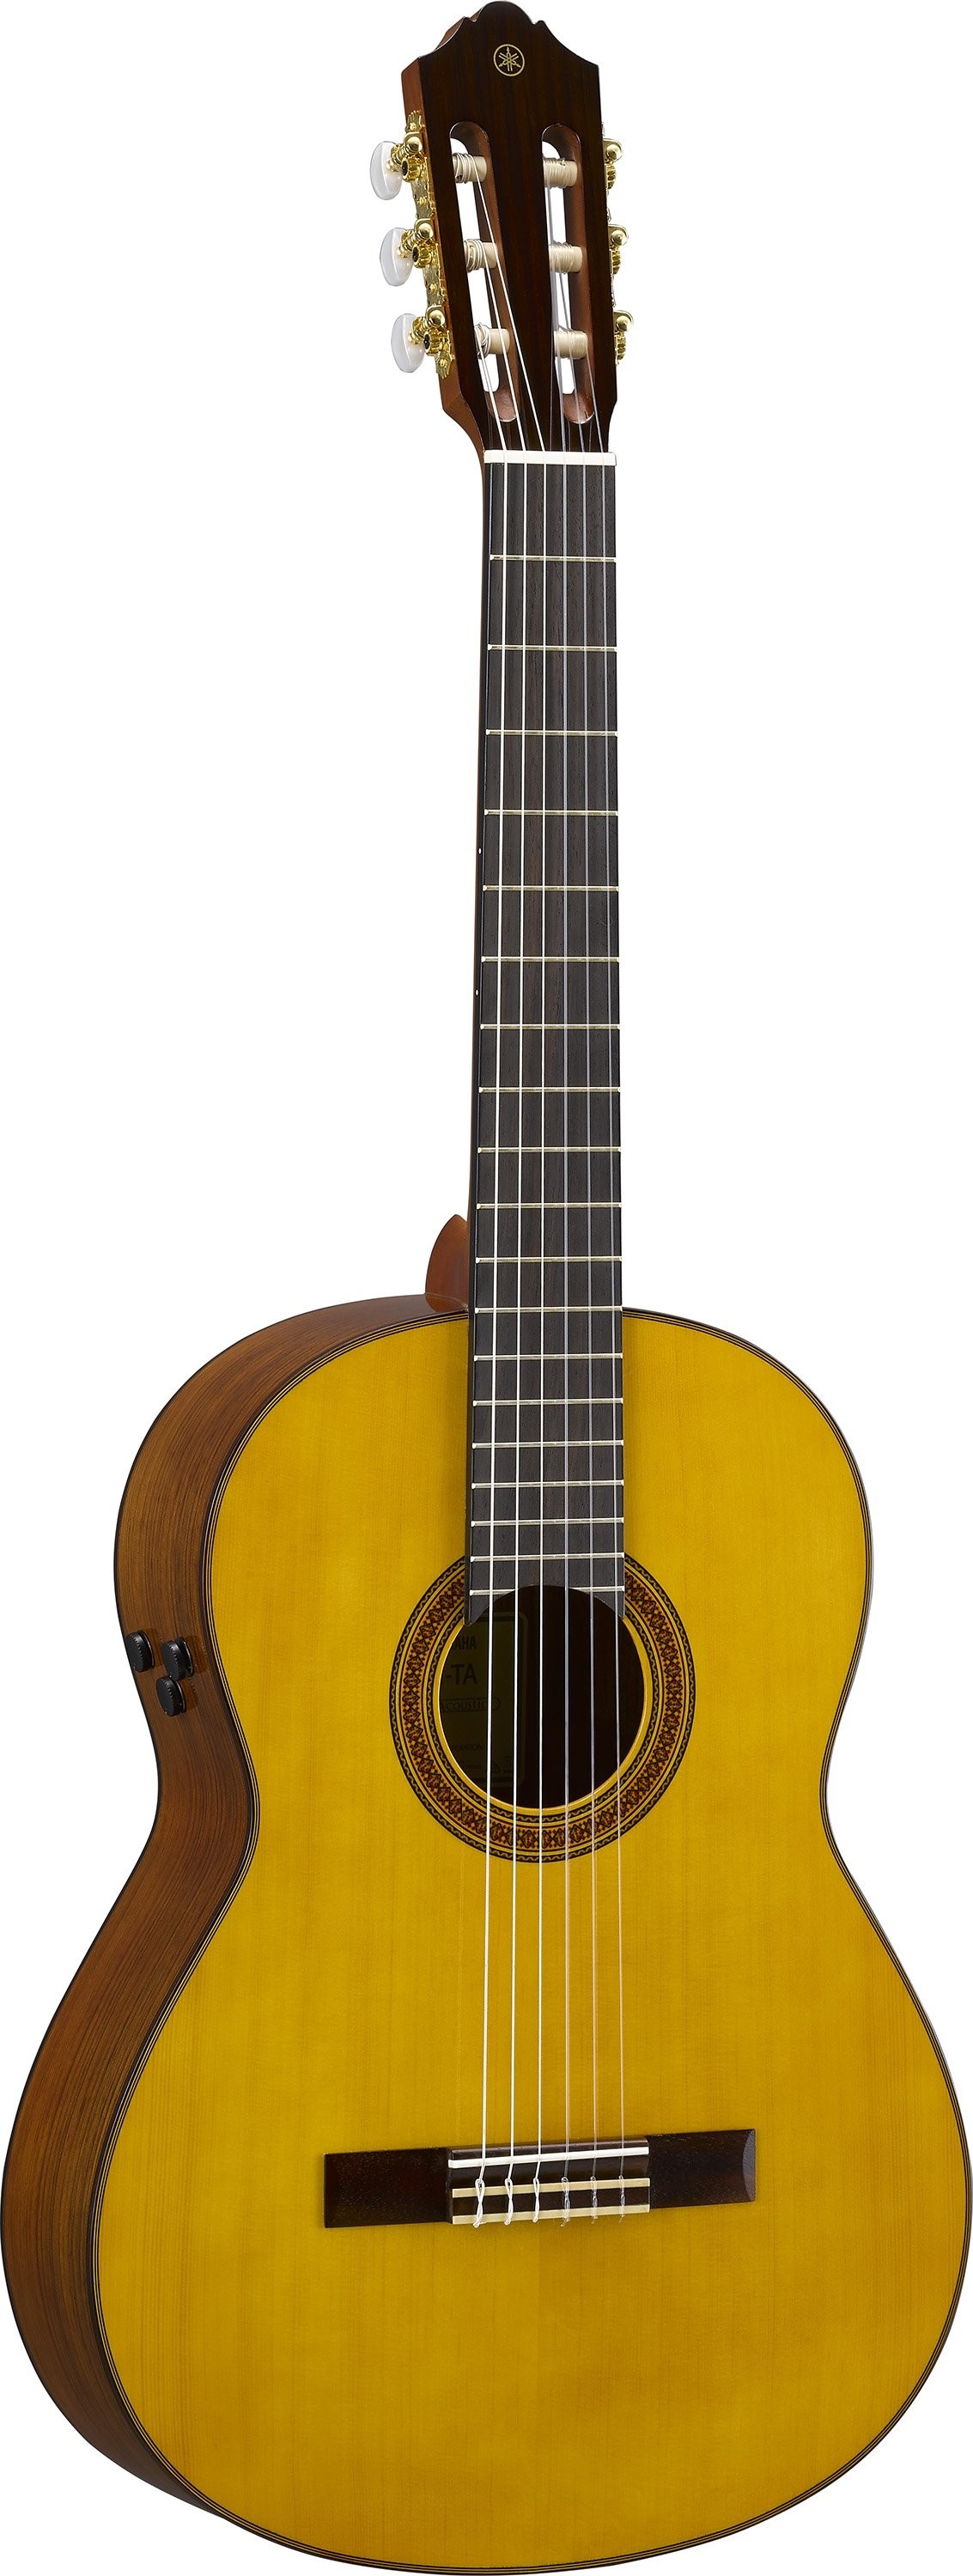 Yamaha CG-TA TransAcoustic klassisk gitar